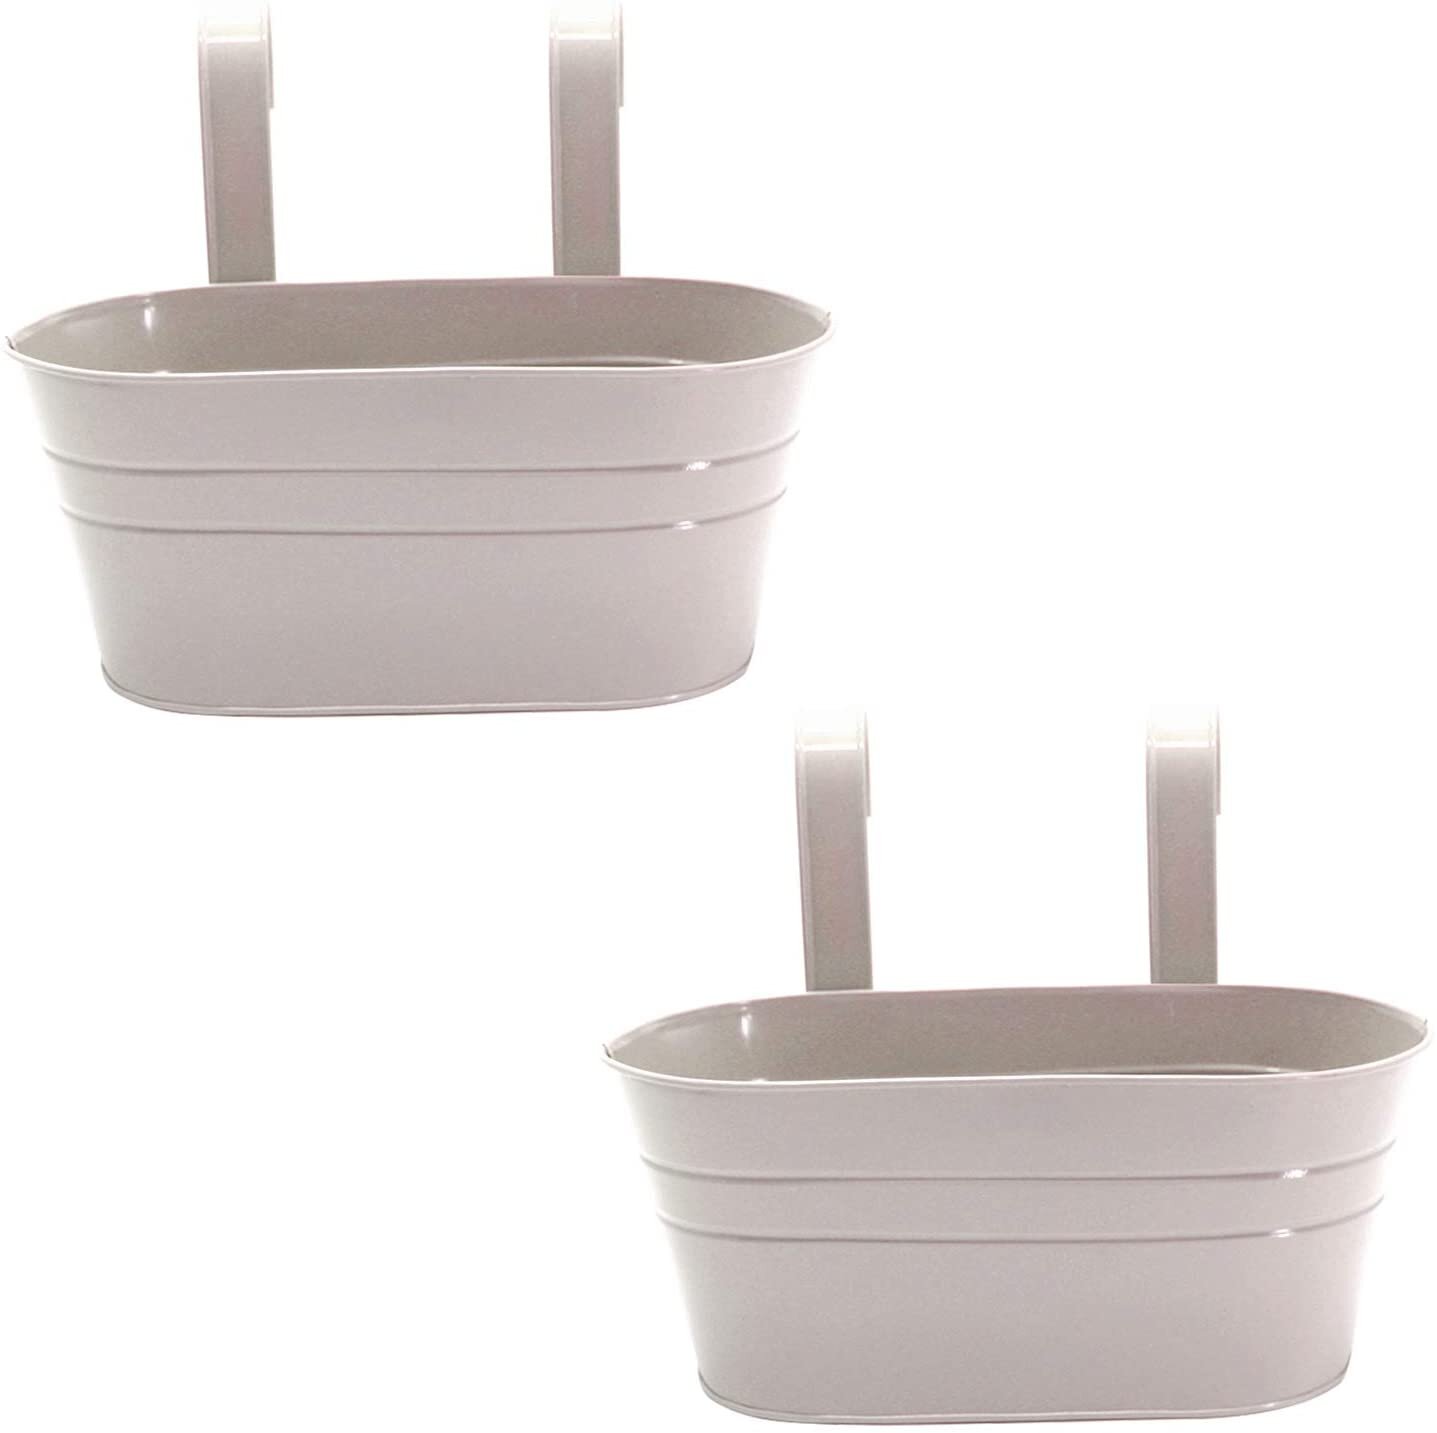 Tea pot accessories Pot of rope 2pcs/lot macrame for pot on sales tea pot string